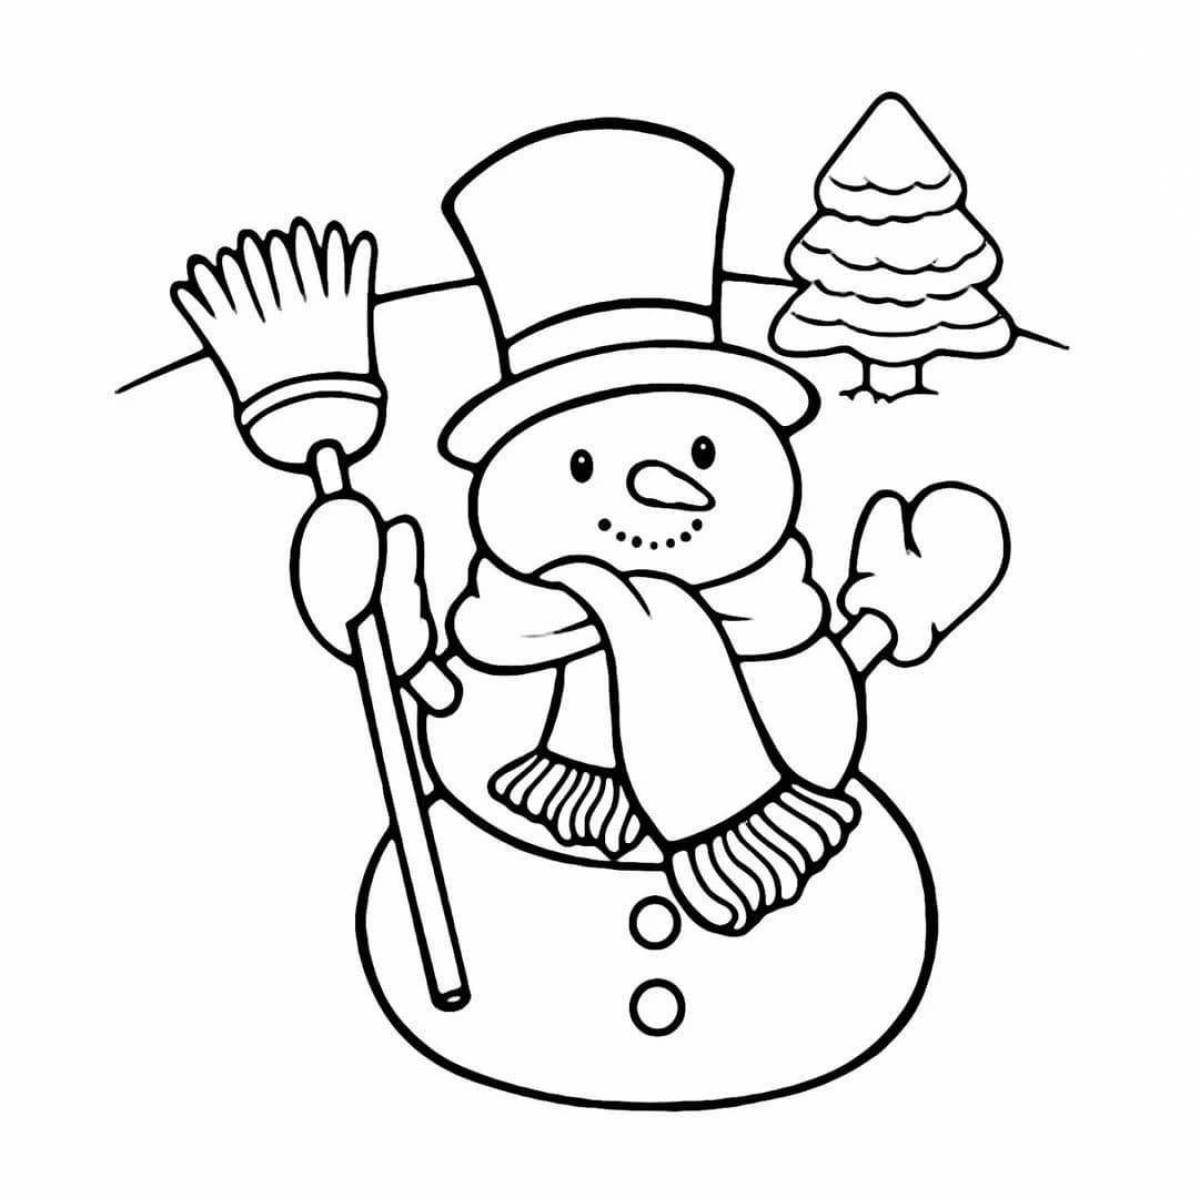 Веселая раскраска снеговик для детей